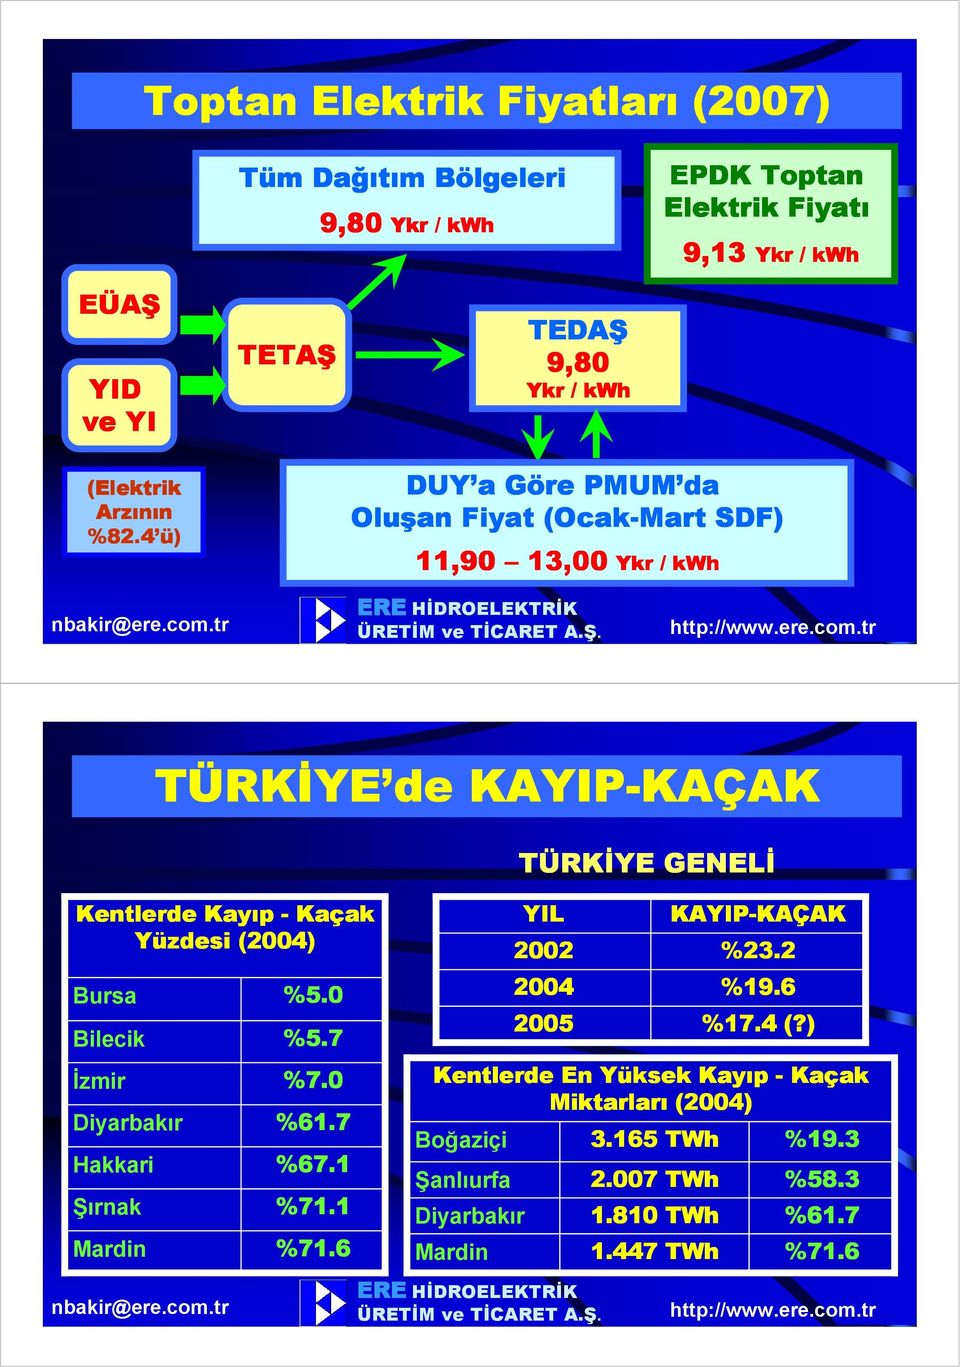 Kaçak Yüzdesi (2004) YIL 2002 KAYIP-KAÇAK KAÇAK %23.2 Bursa %5.0 2004 %19.6 Bilecik %5.7 2005 %17.4 (?) Đzmir %7.